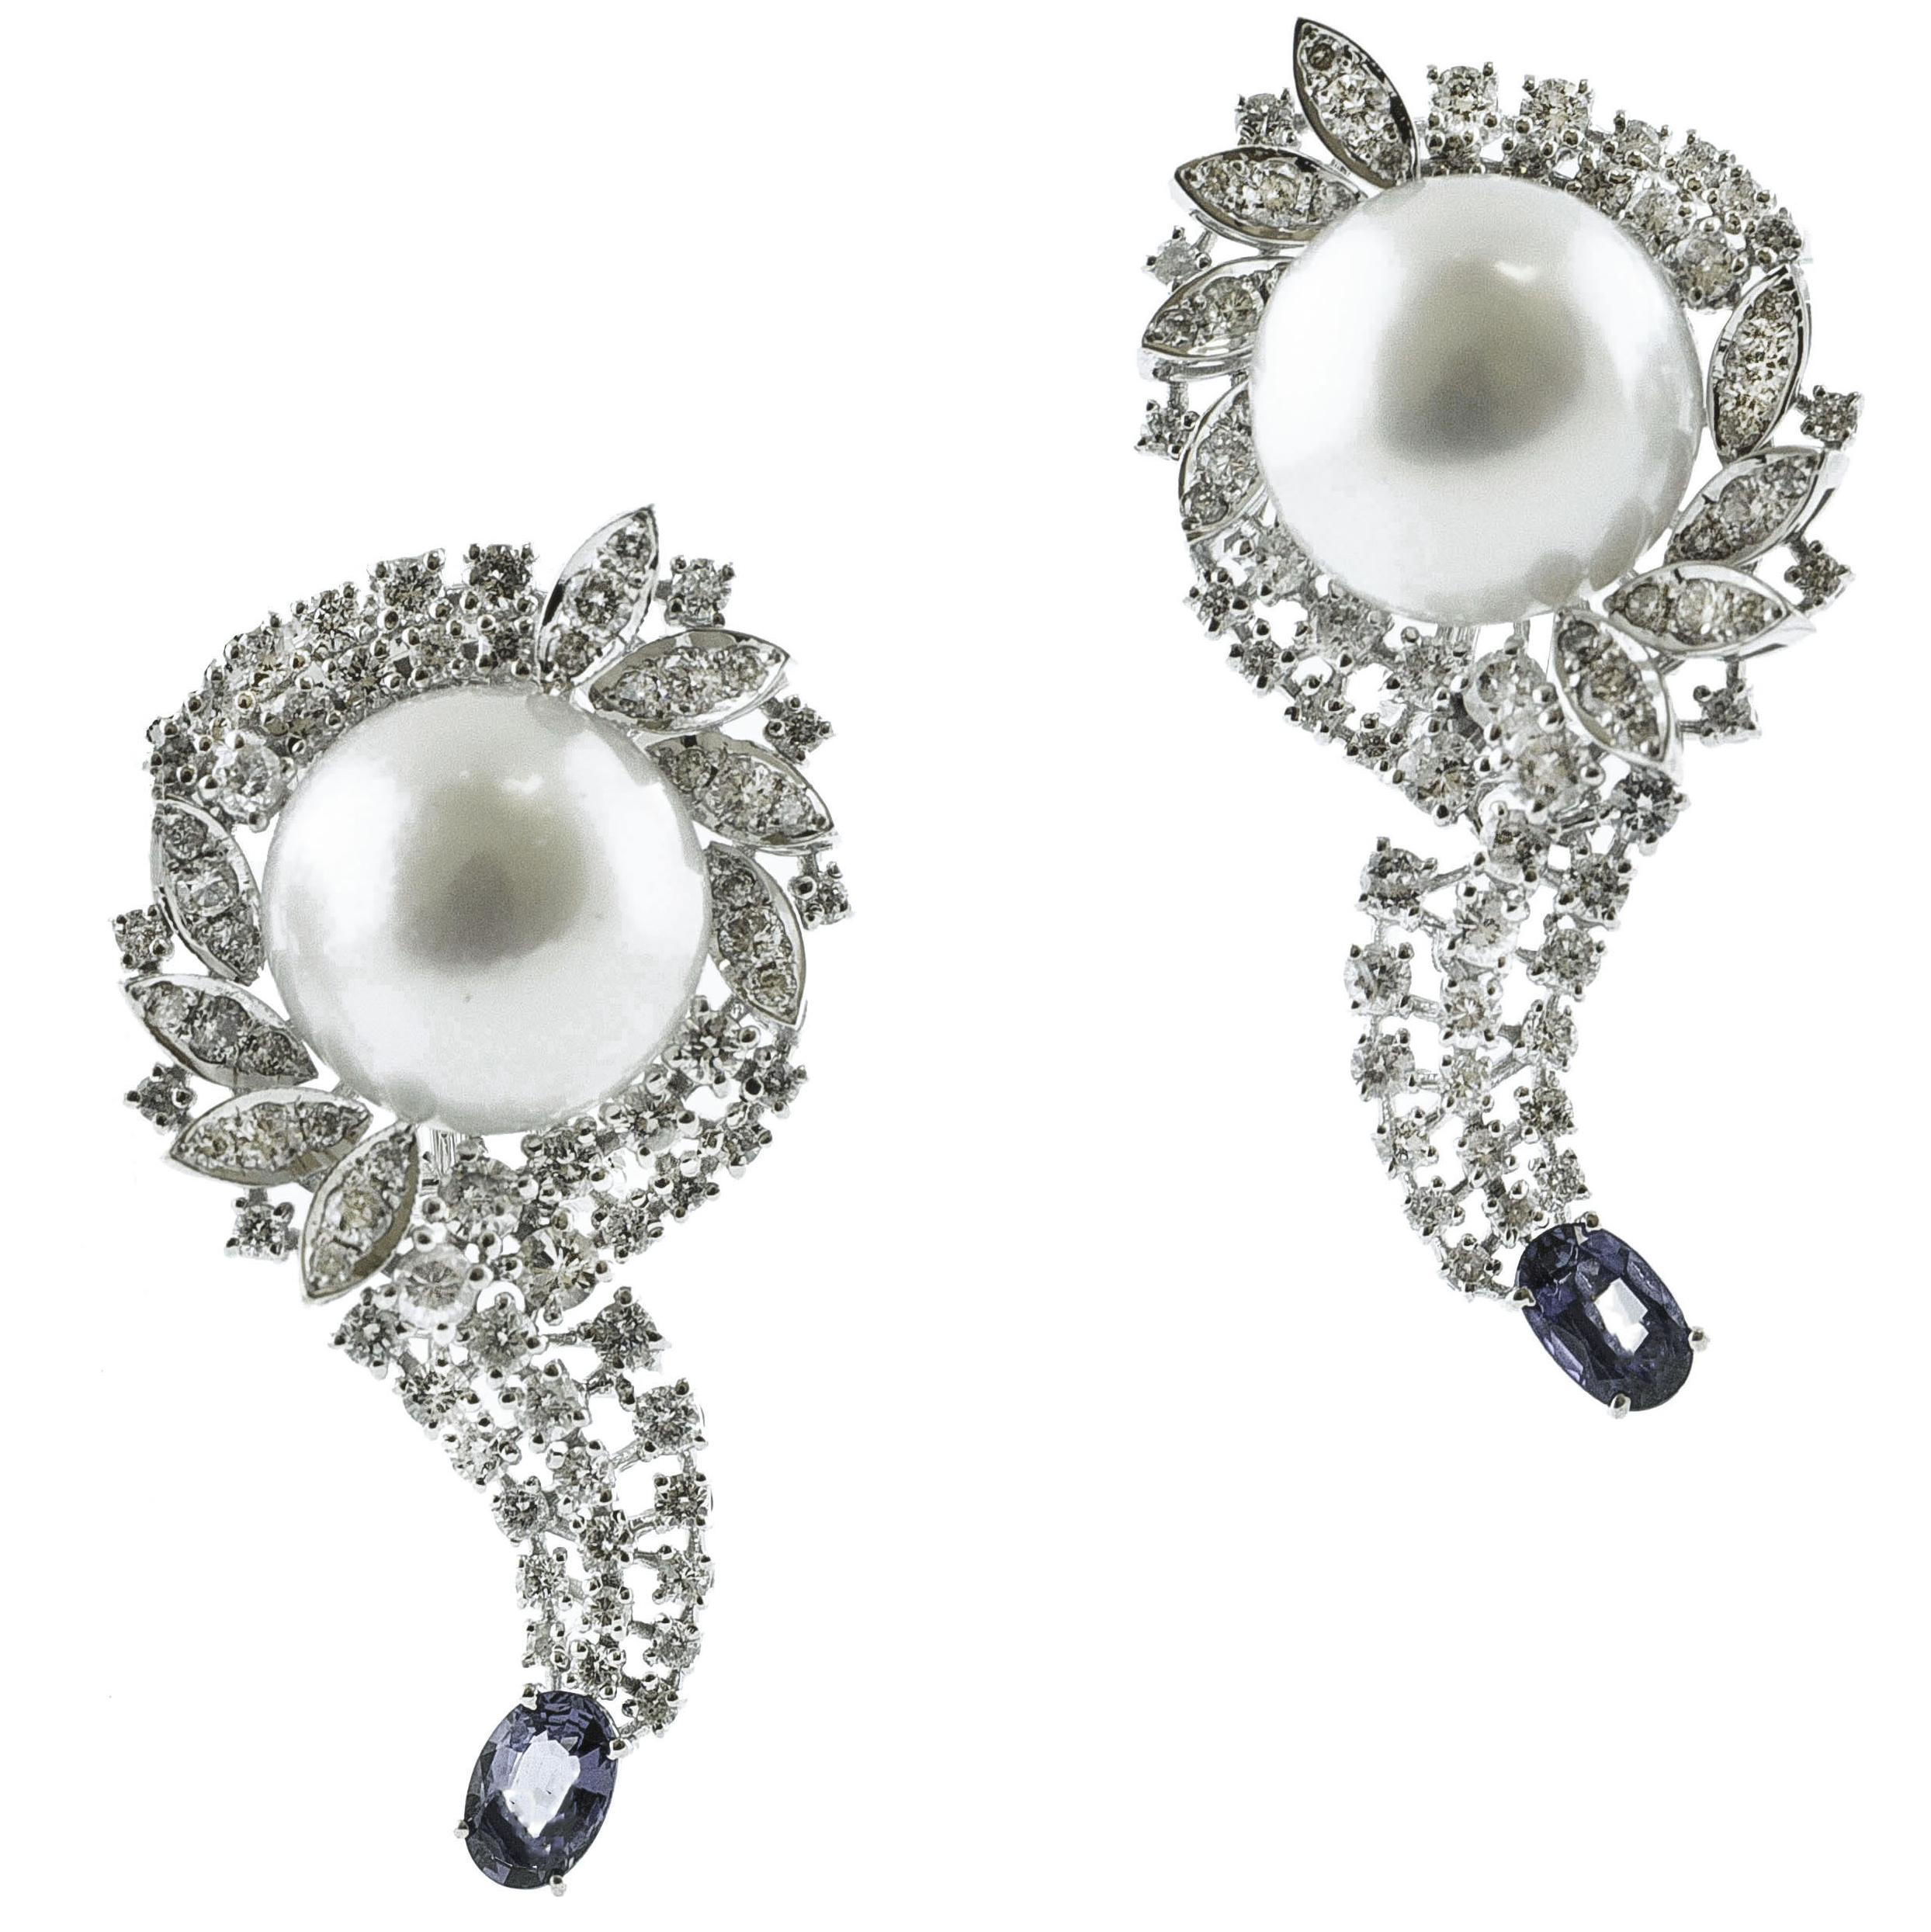 Diamonds, Blue Sapphires, White Pearls, 18 Karat White Gold Earrings